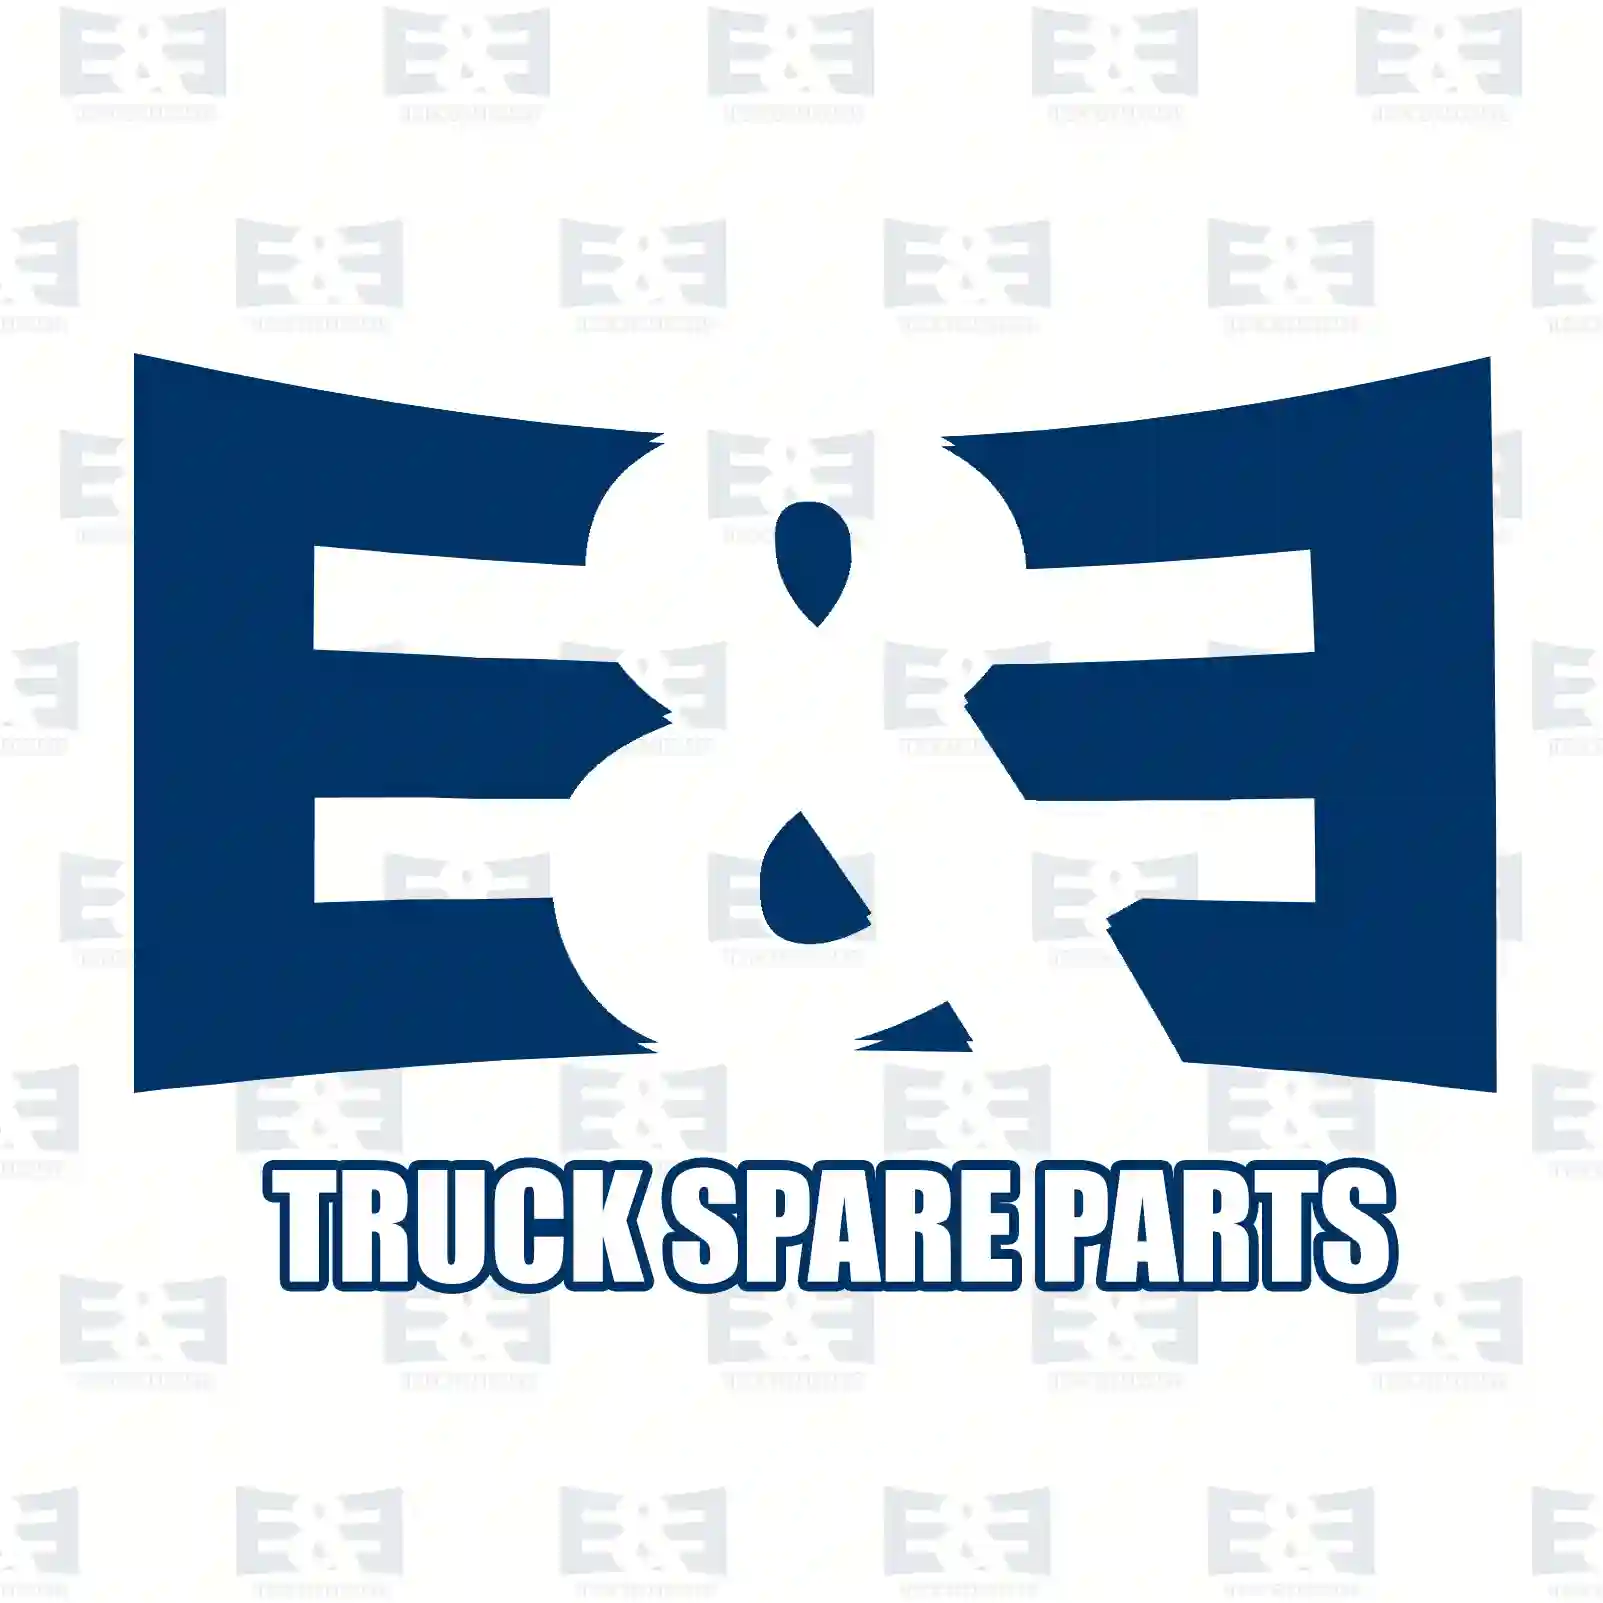 Brake disc, 2E2295251, 70M069018, 70M200135, M069018, M200135, M200135-01, MBR9007, , , ||  2E2295251 E&E Truck Spare Parts | Truck Spare Parts, Auotomotive Spare Parts Brake disc, 2E2295251, 70M069018, 70M200135, M069018, M200135, M200135-01, MBR9007, , , ||  2E2295251 E&E Truck Spare Parts | Truck Spare Parts, Auotomotive Spare Parts